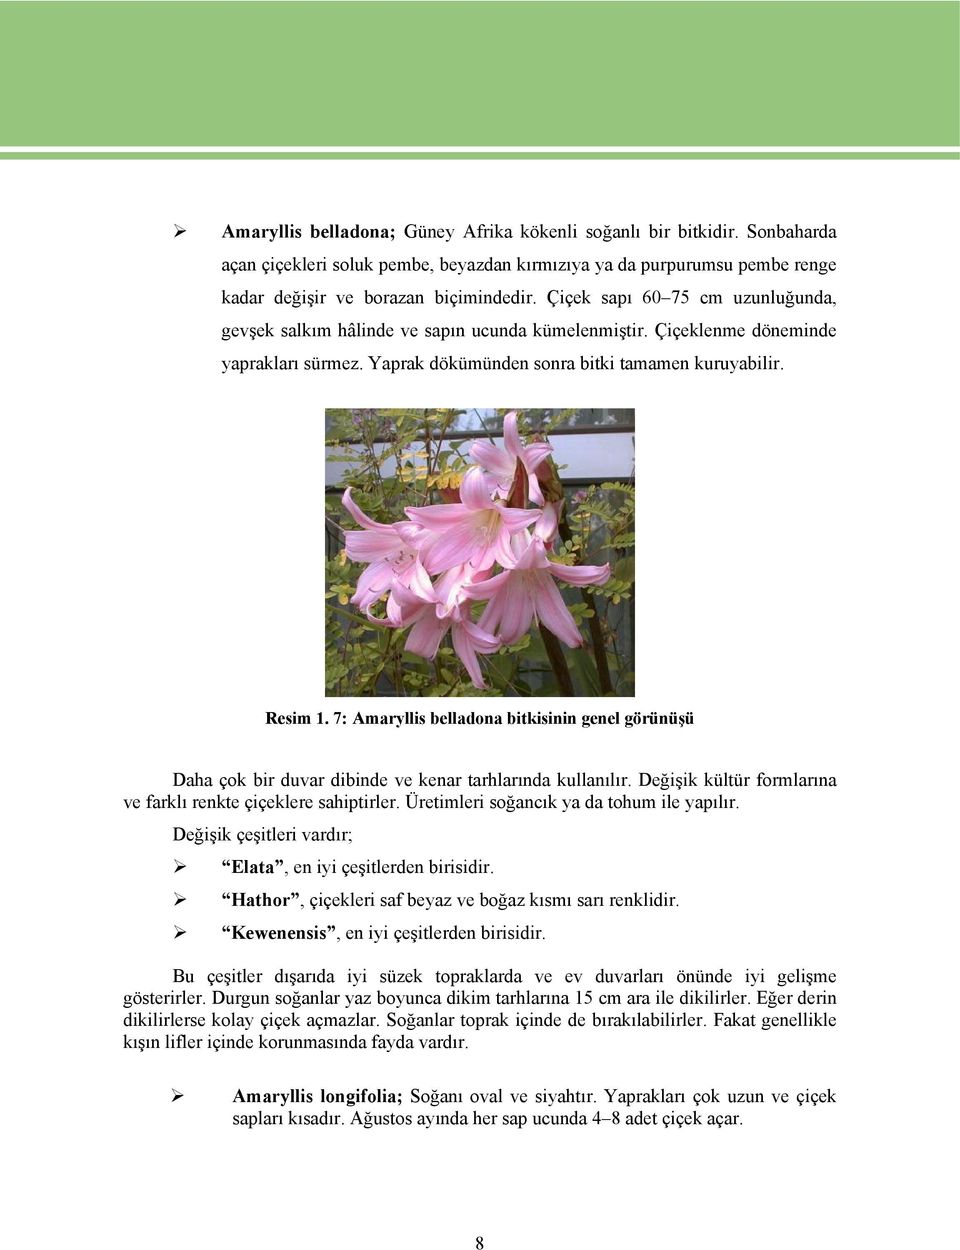 7: Amaryllis belladona bitkisinin genel görünüşü Daha çok bir duvar dibinde ve kenar tarhlarında kullanılır. Değişik kültür formlarına ve farklı renkte çiçeklere sahiptirler.